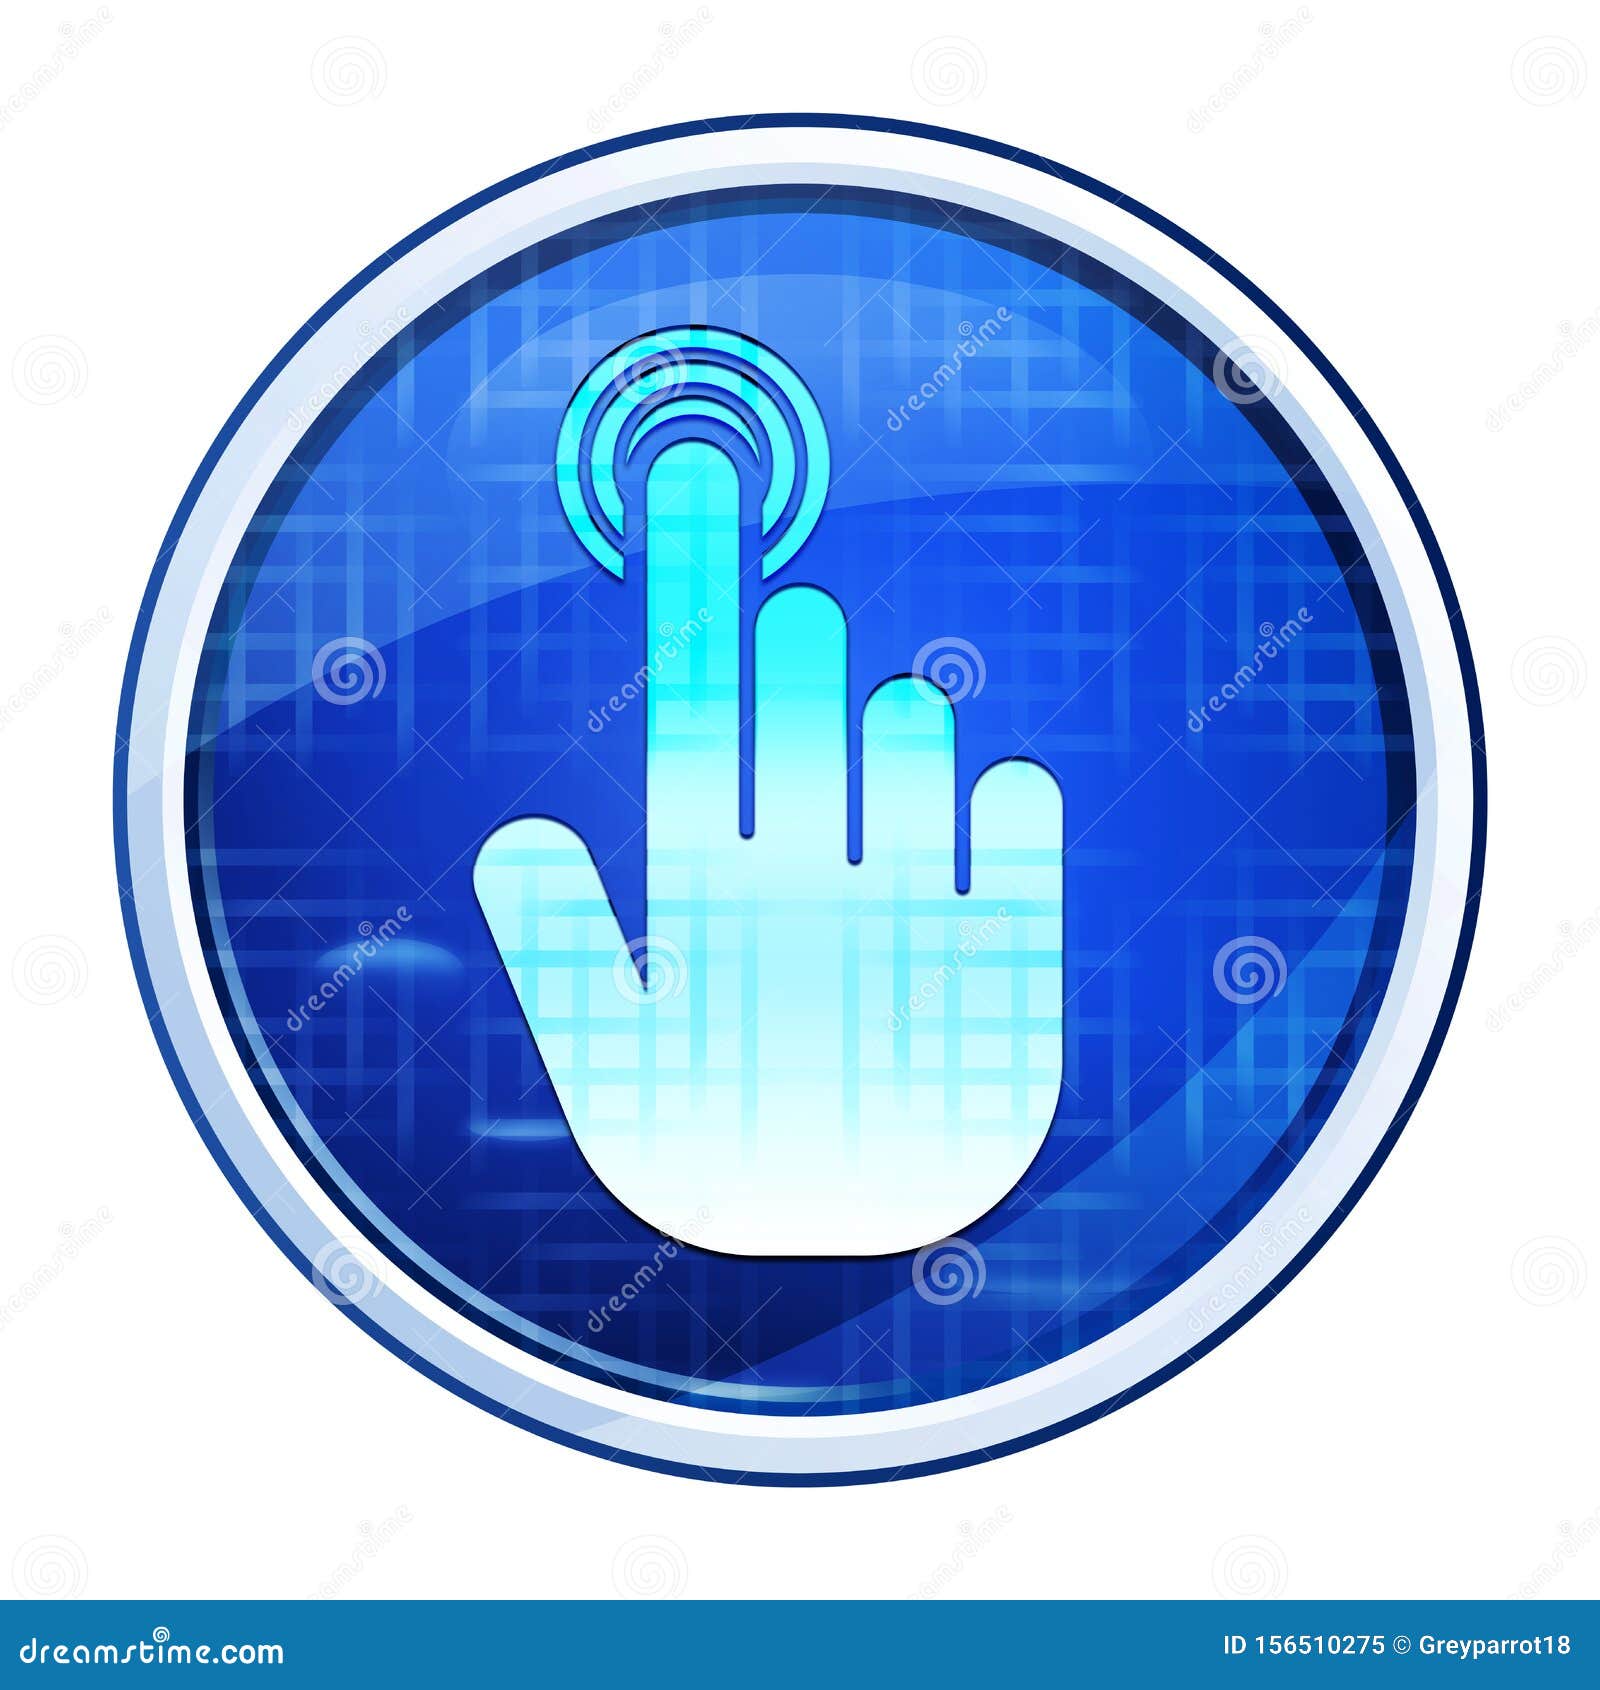 hand cursor click icon futuristic blue round button  